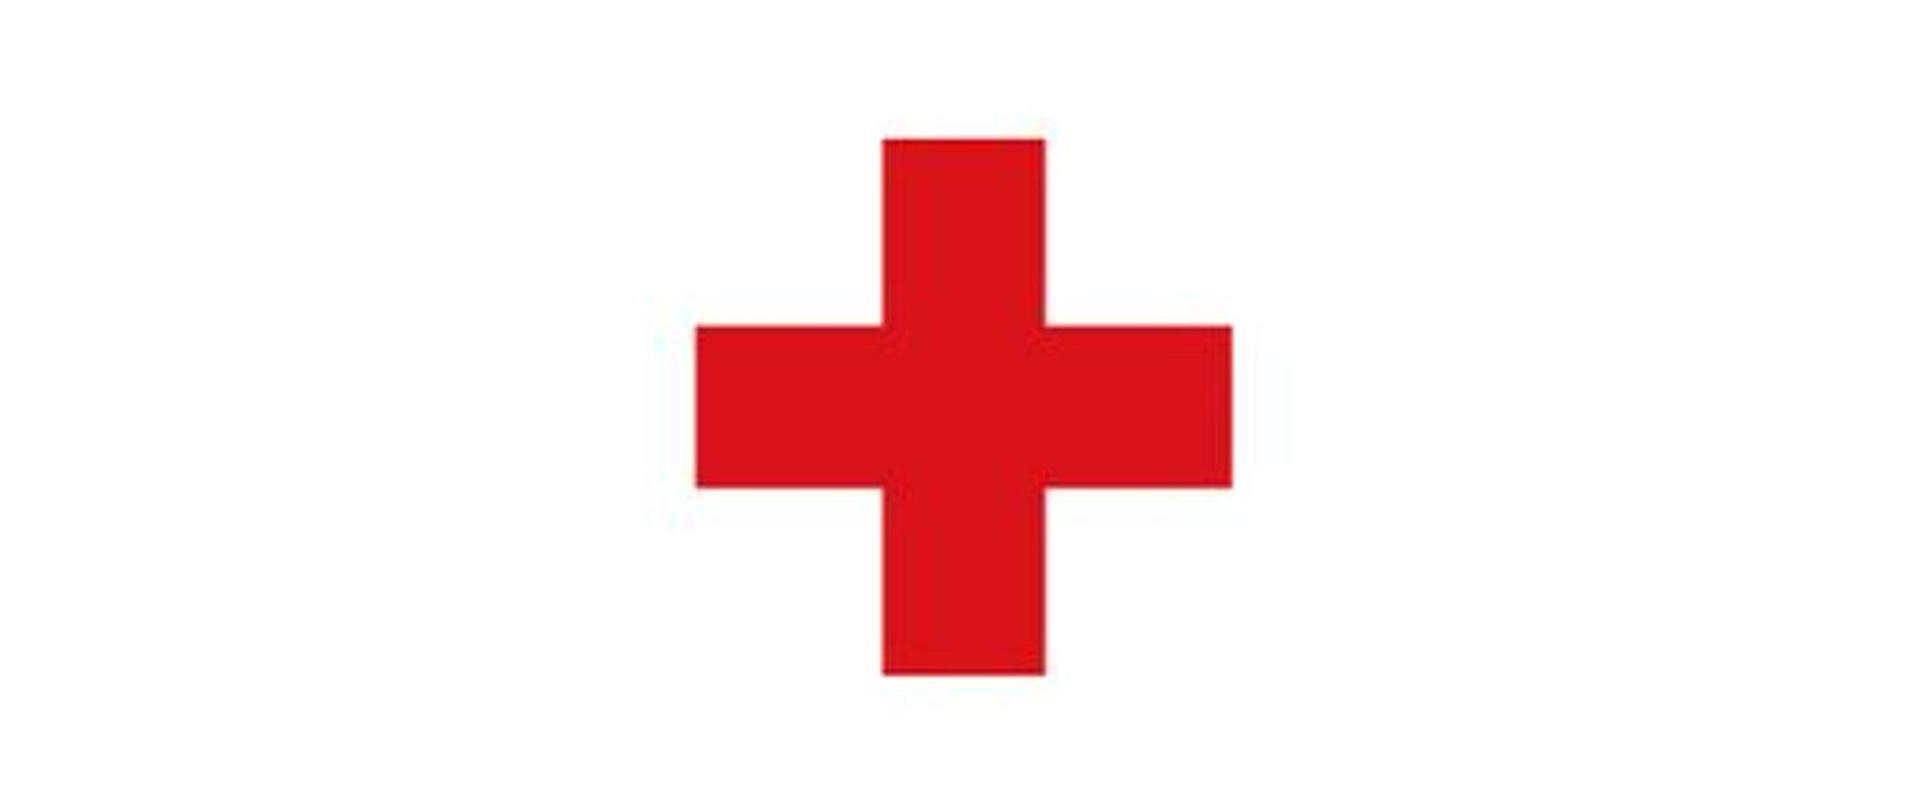 Obraz przedstawia czerwony krzyż na białym tle